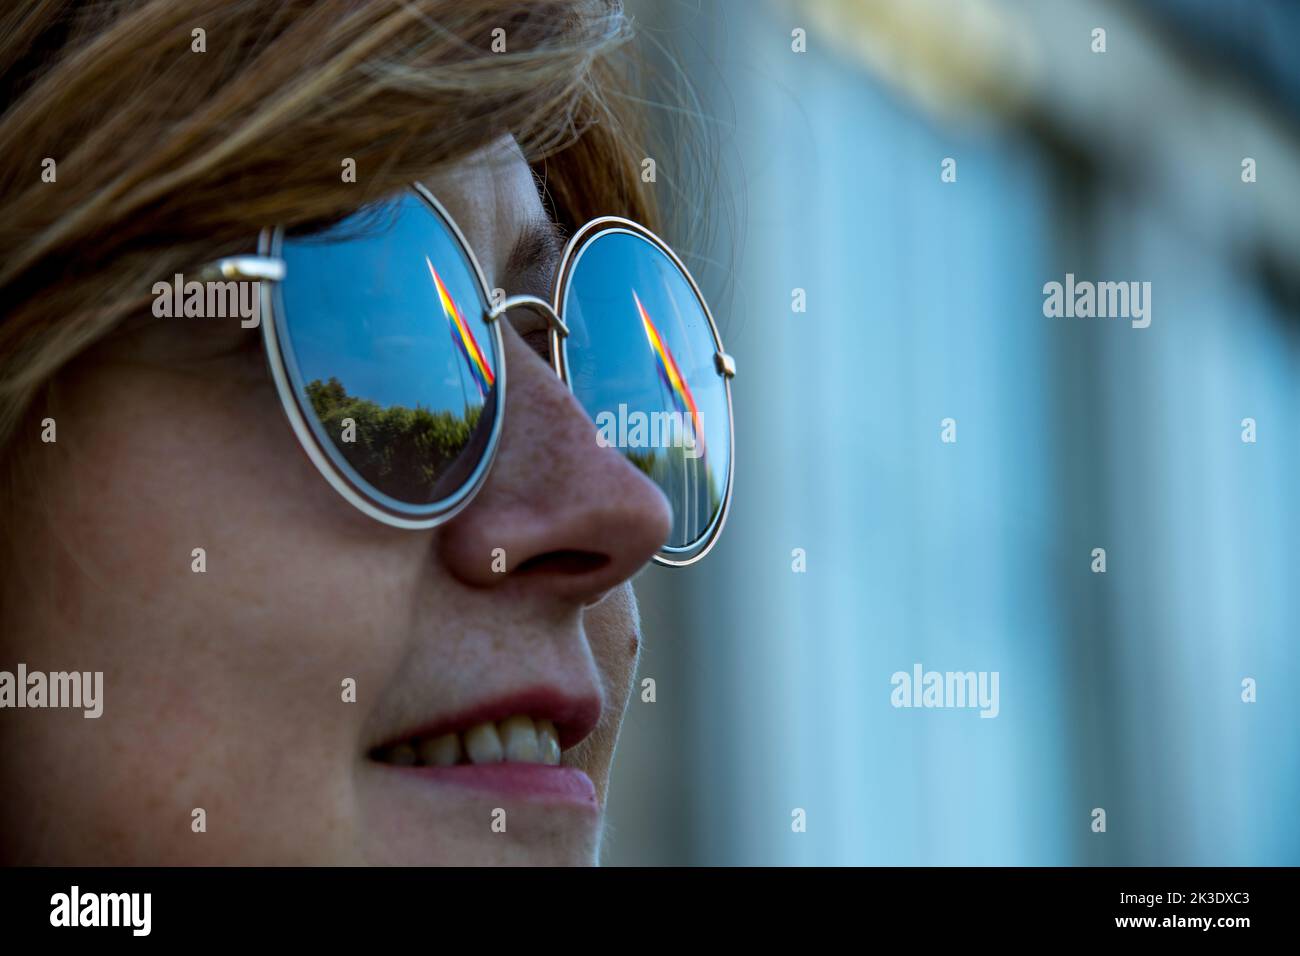 Jeune femme européenne avec des lunettes de soleil reflétant certains drapeaux arc-en-ciel Banque D'Images